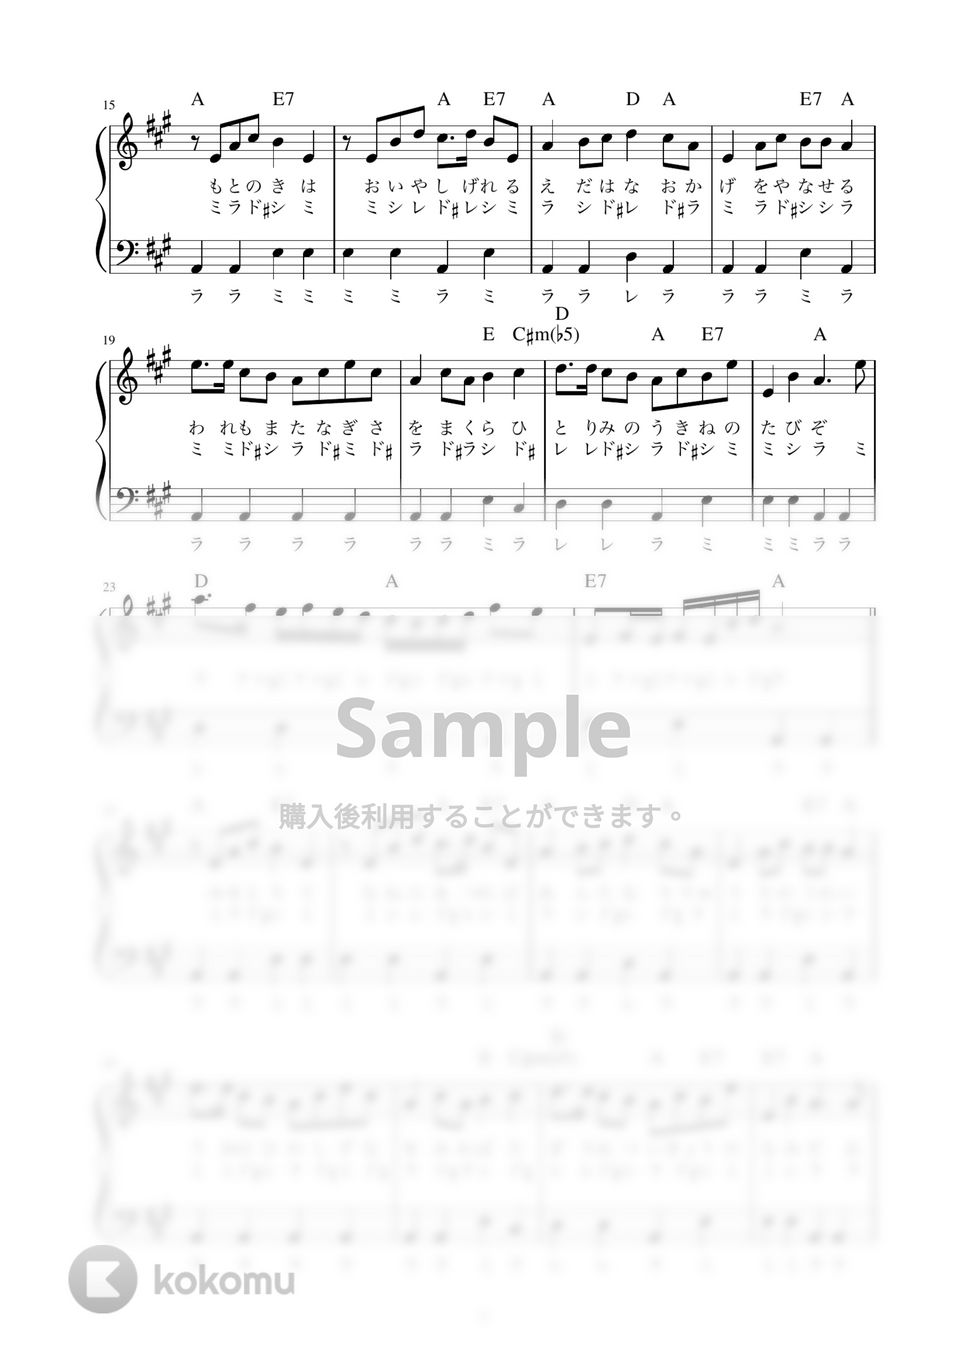 椰子の実 (かんたん / 歌詞付き / ドレミ付き / 初心者) by piano.tokyo